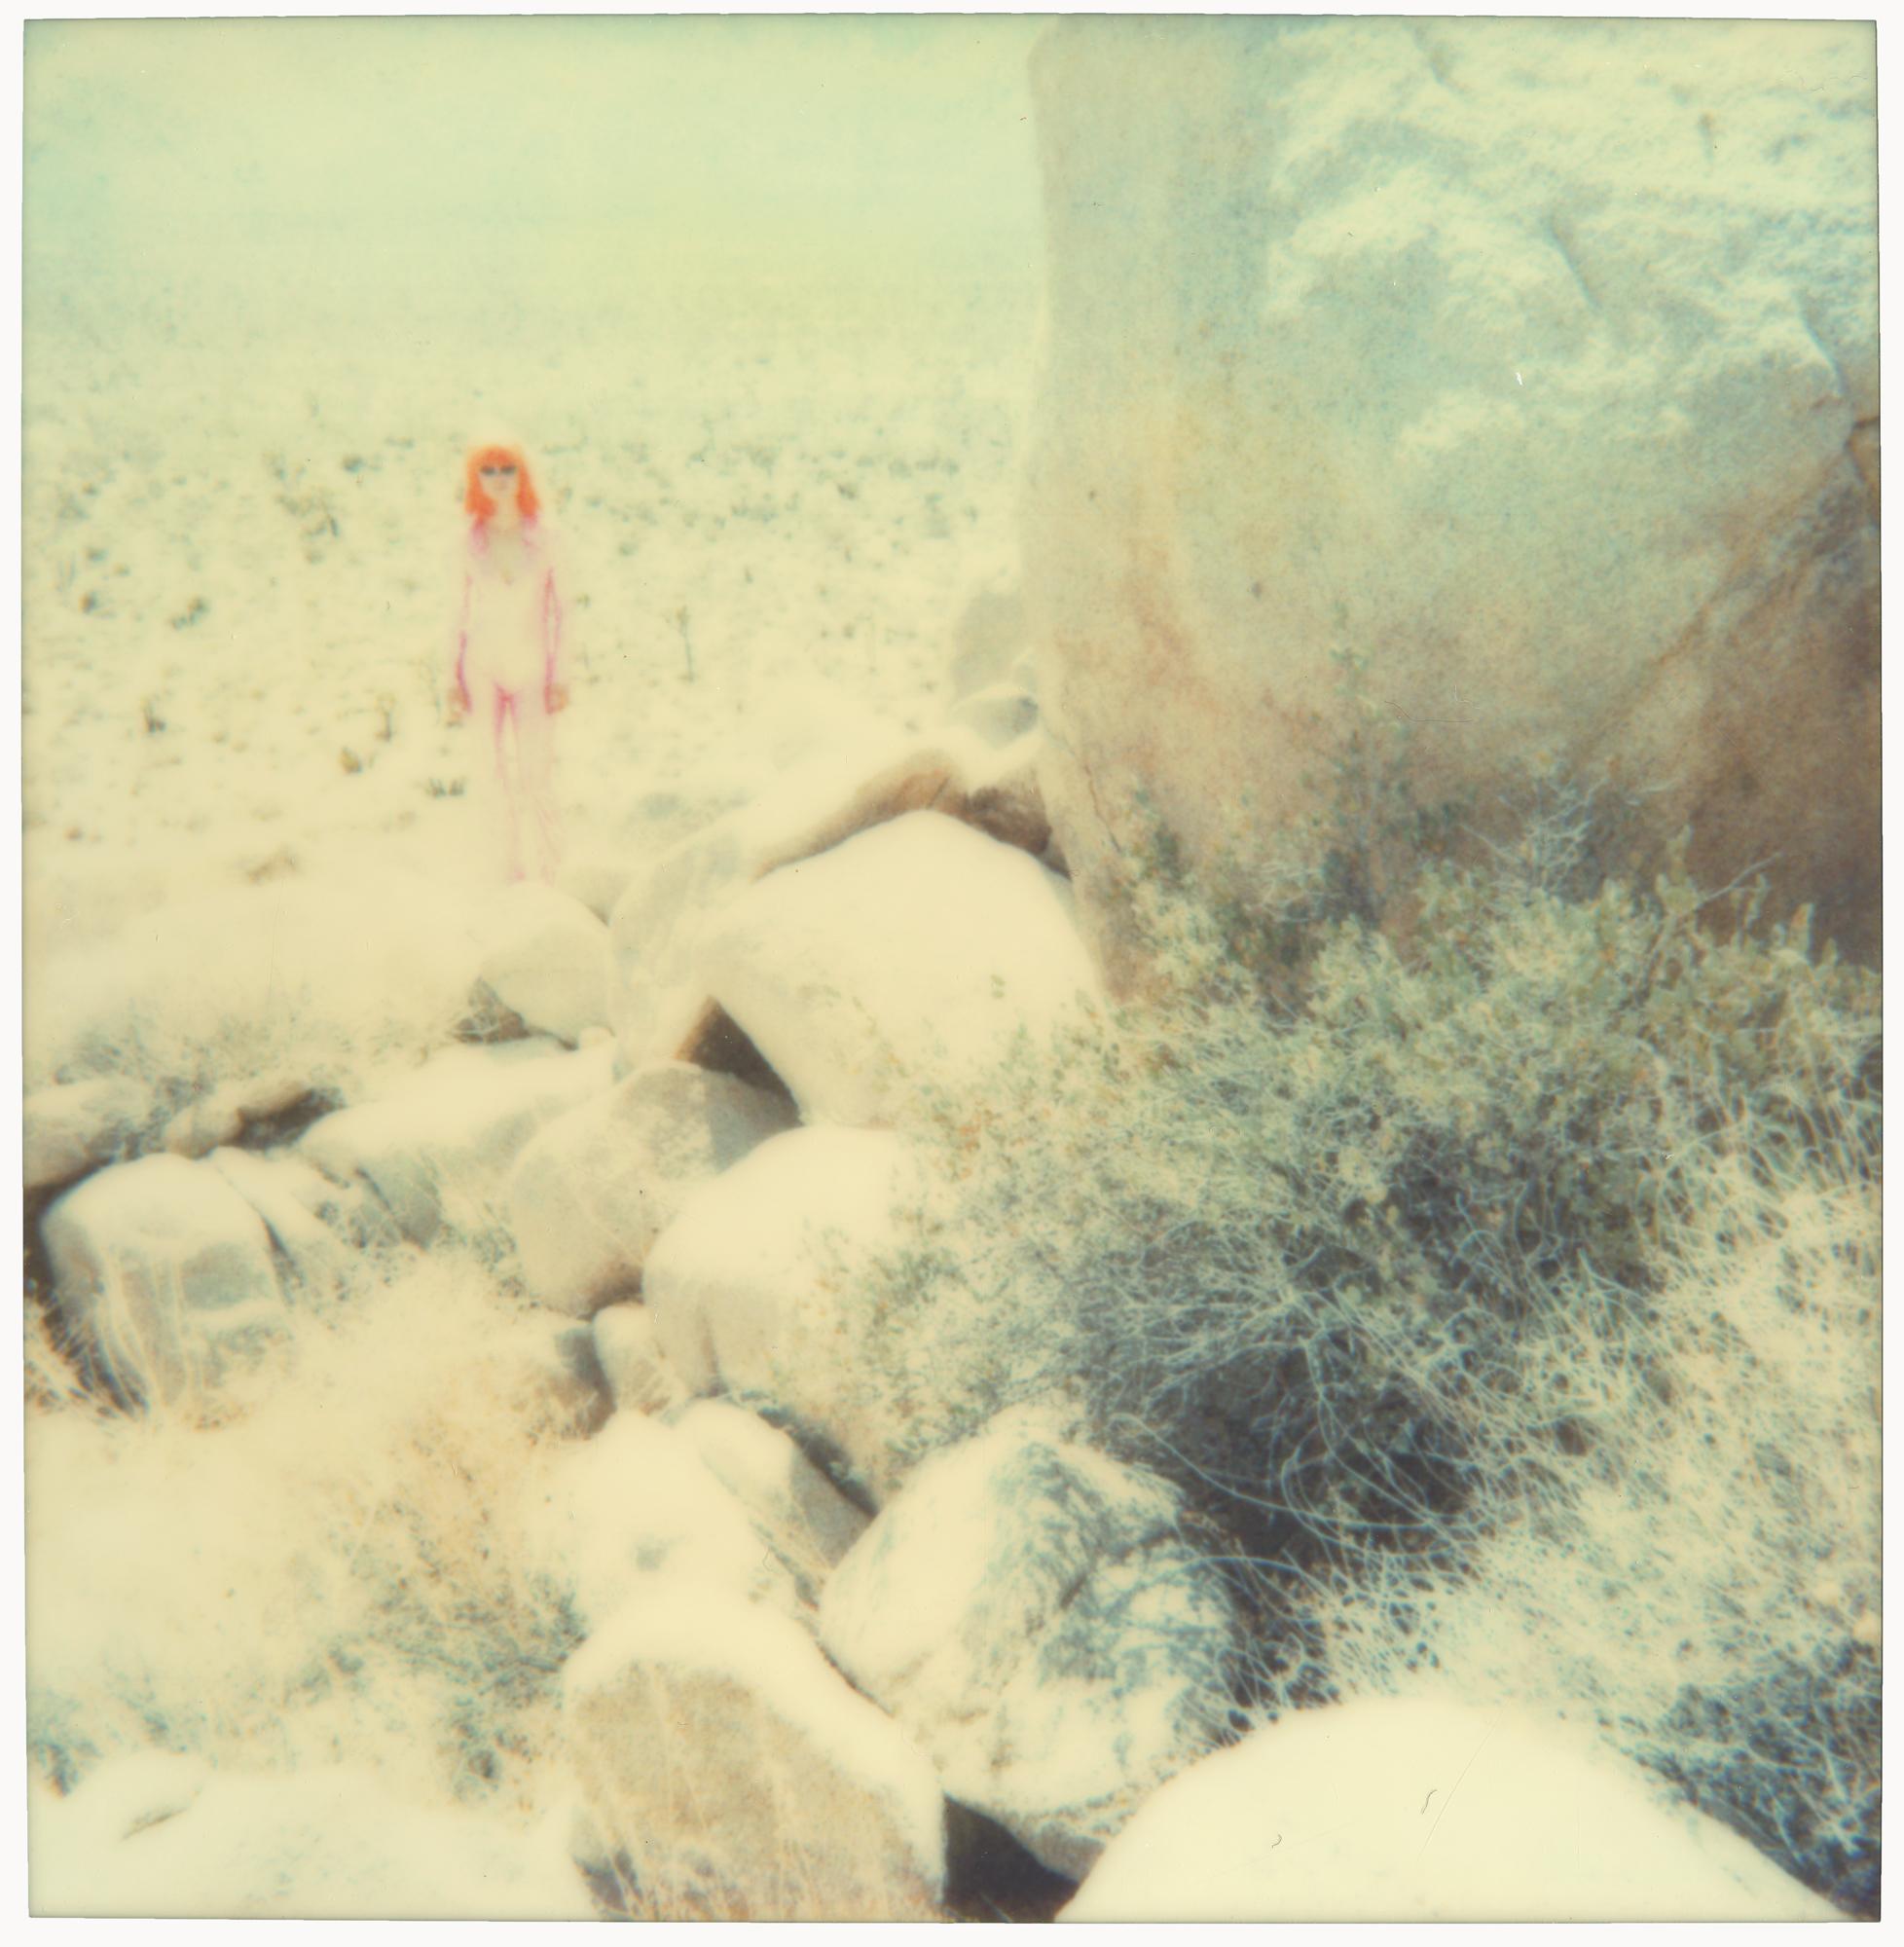 Stefanie Schneider Portrait Photograph - Just Landed (Long Way Home) - featuring Radha Mitchell, analog